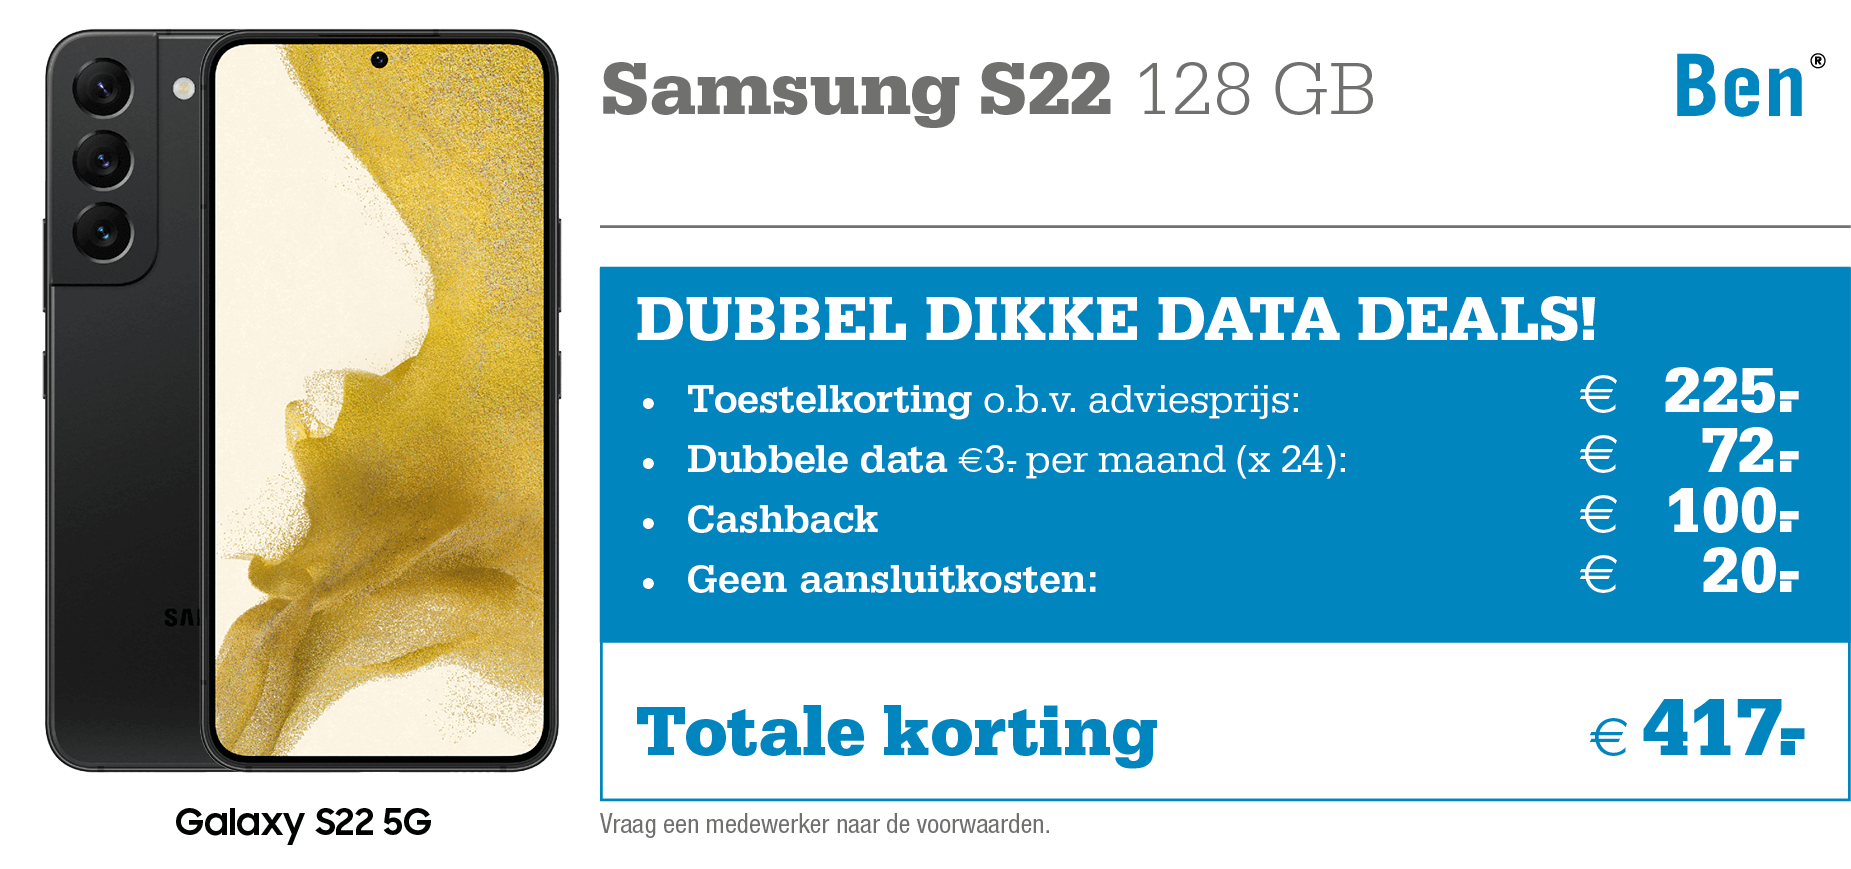 Samsung Galaxy S22 met korting Ben aanbieding